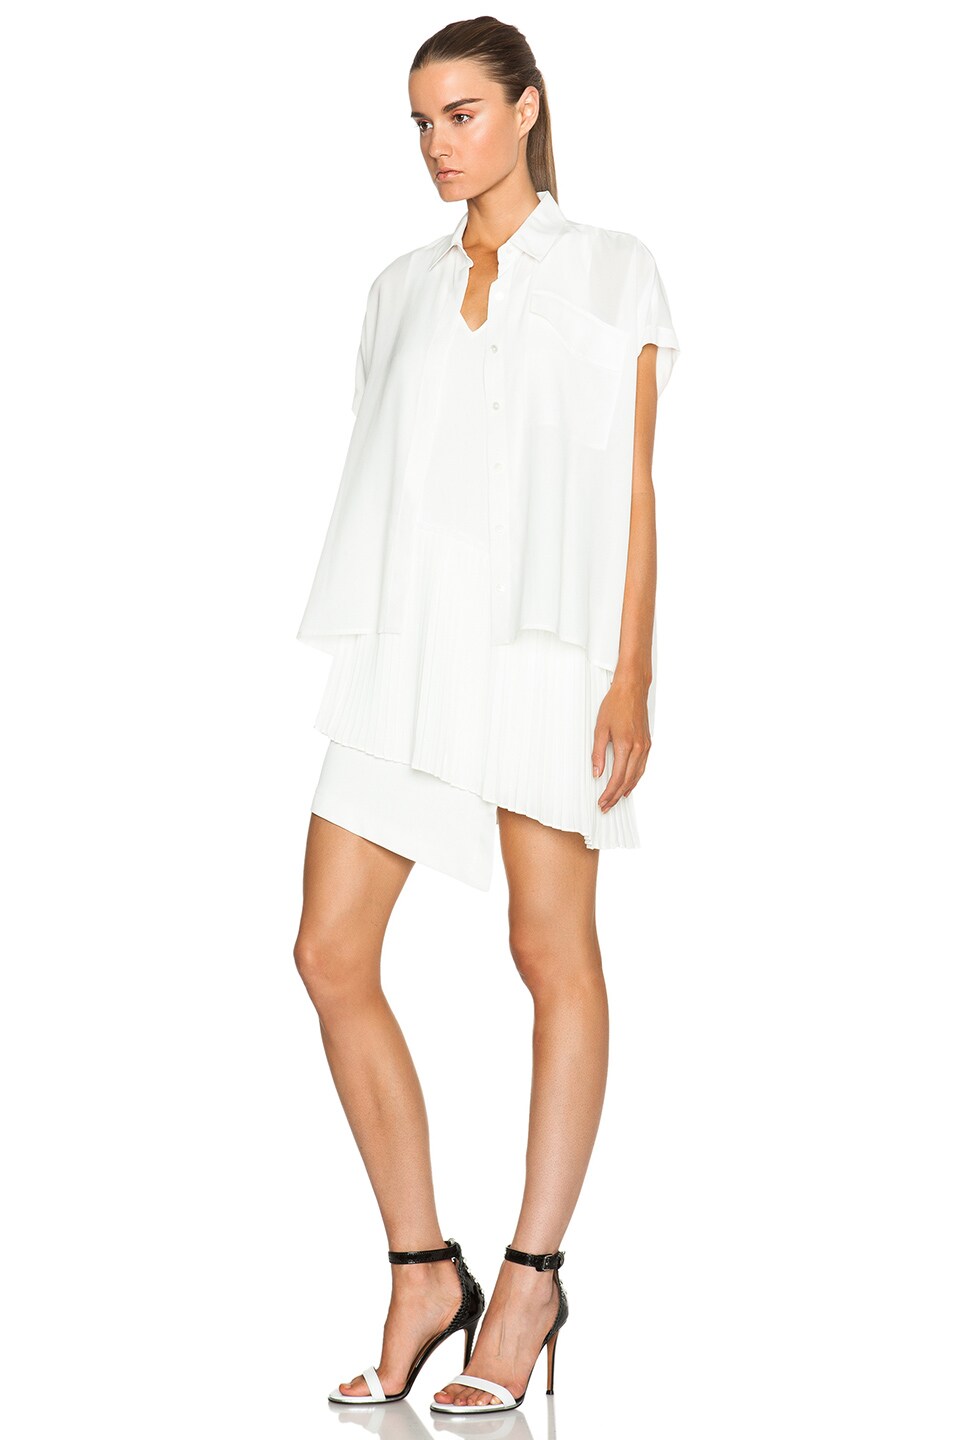 DEREK LAM 10 CROSBY Pleated Skirt 2 in 1 Dress in White | FWRD